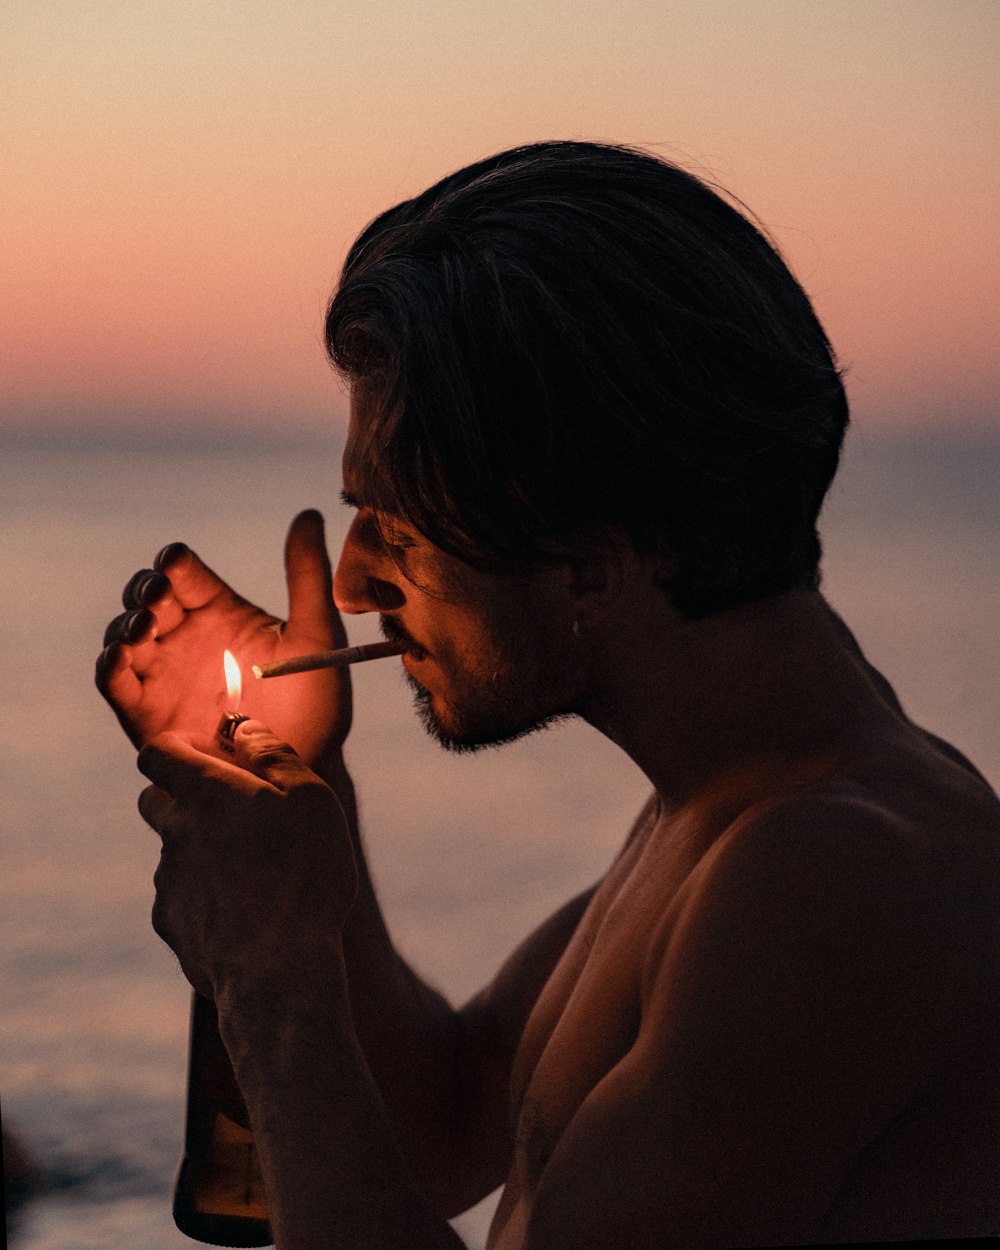 man smoking cigarette during sunset